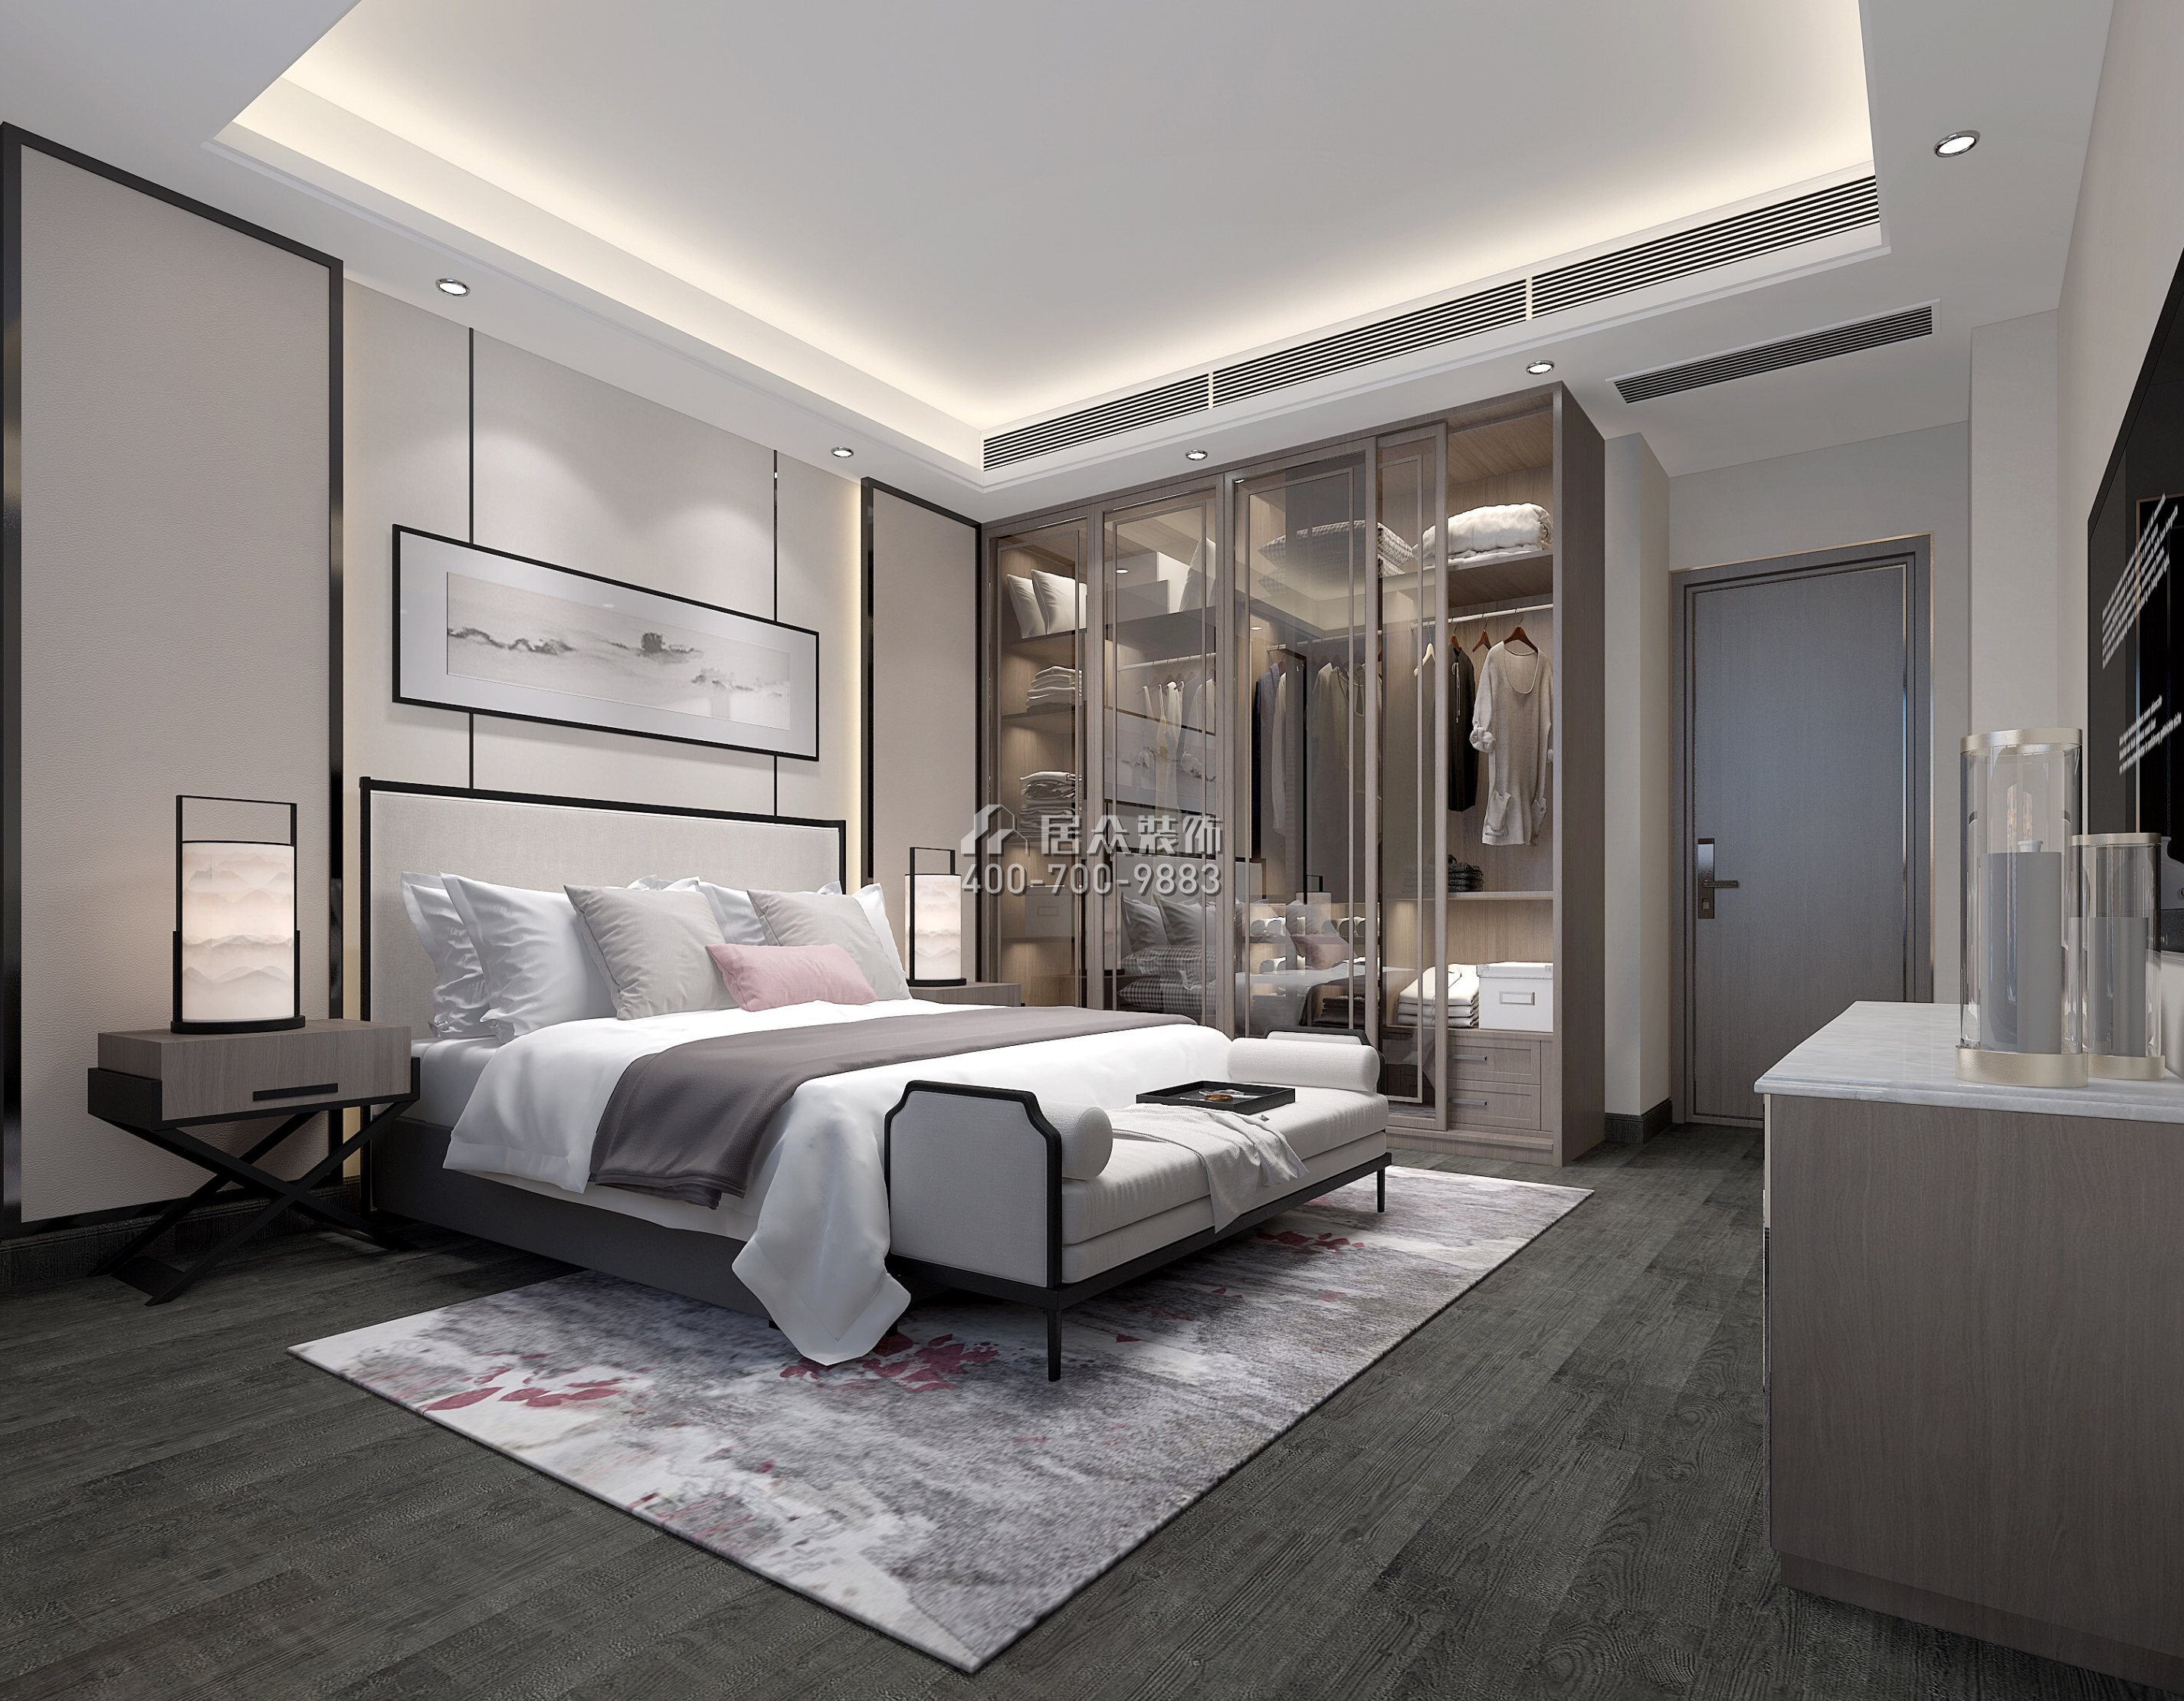 星河丹堤250平方米中式風格復式戶型臥室裝修效果圖